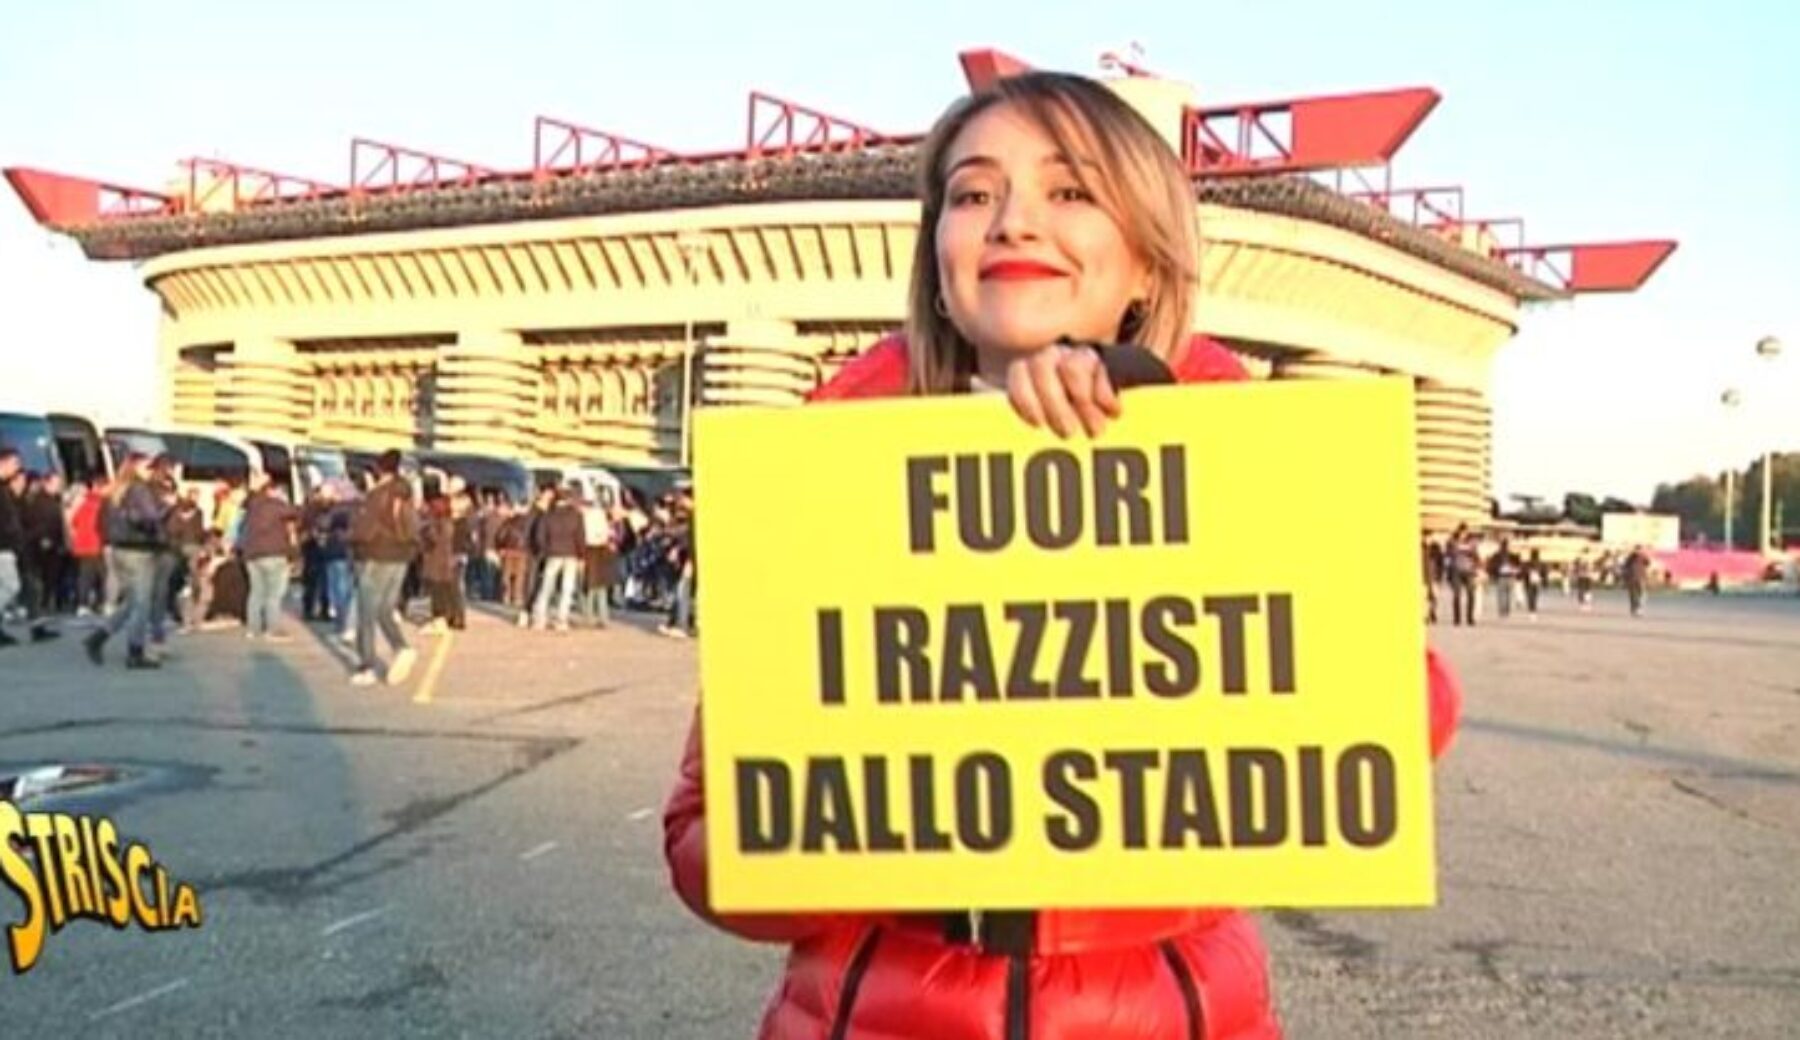 Razzismo negli stadi: Rajae dai tifosi di Inter e Verona per un selfie con il cartello “Fuori i razzisti dallo stadio”